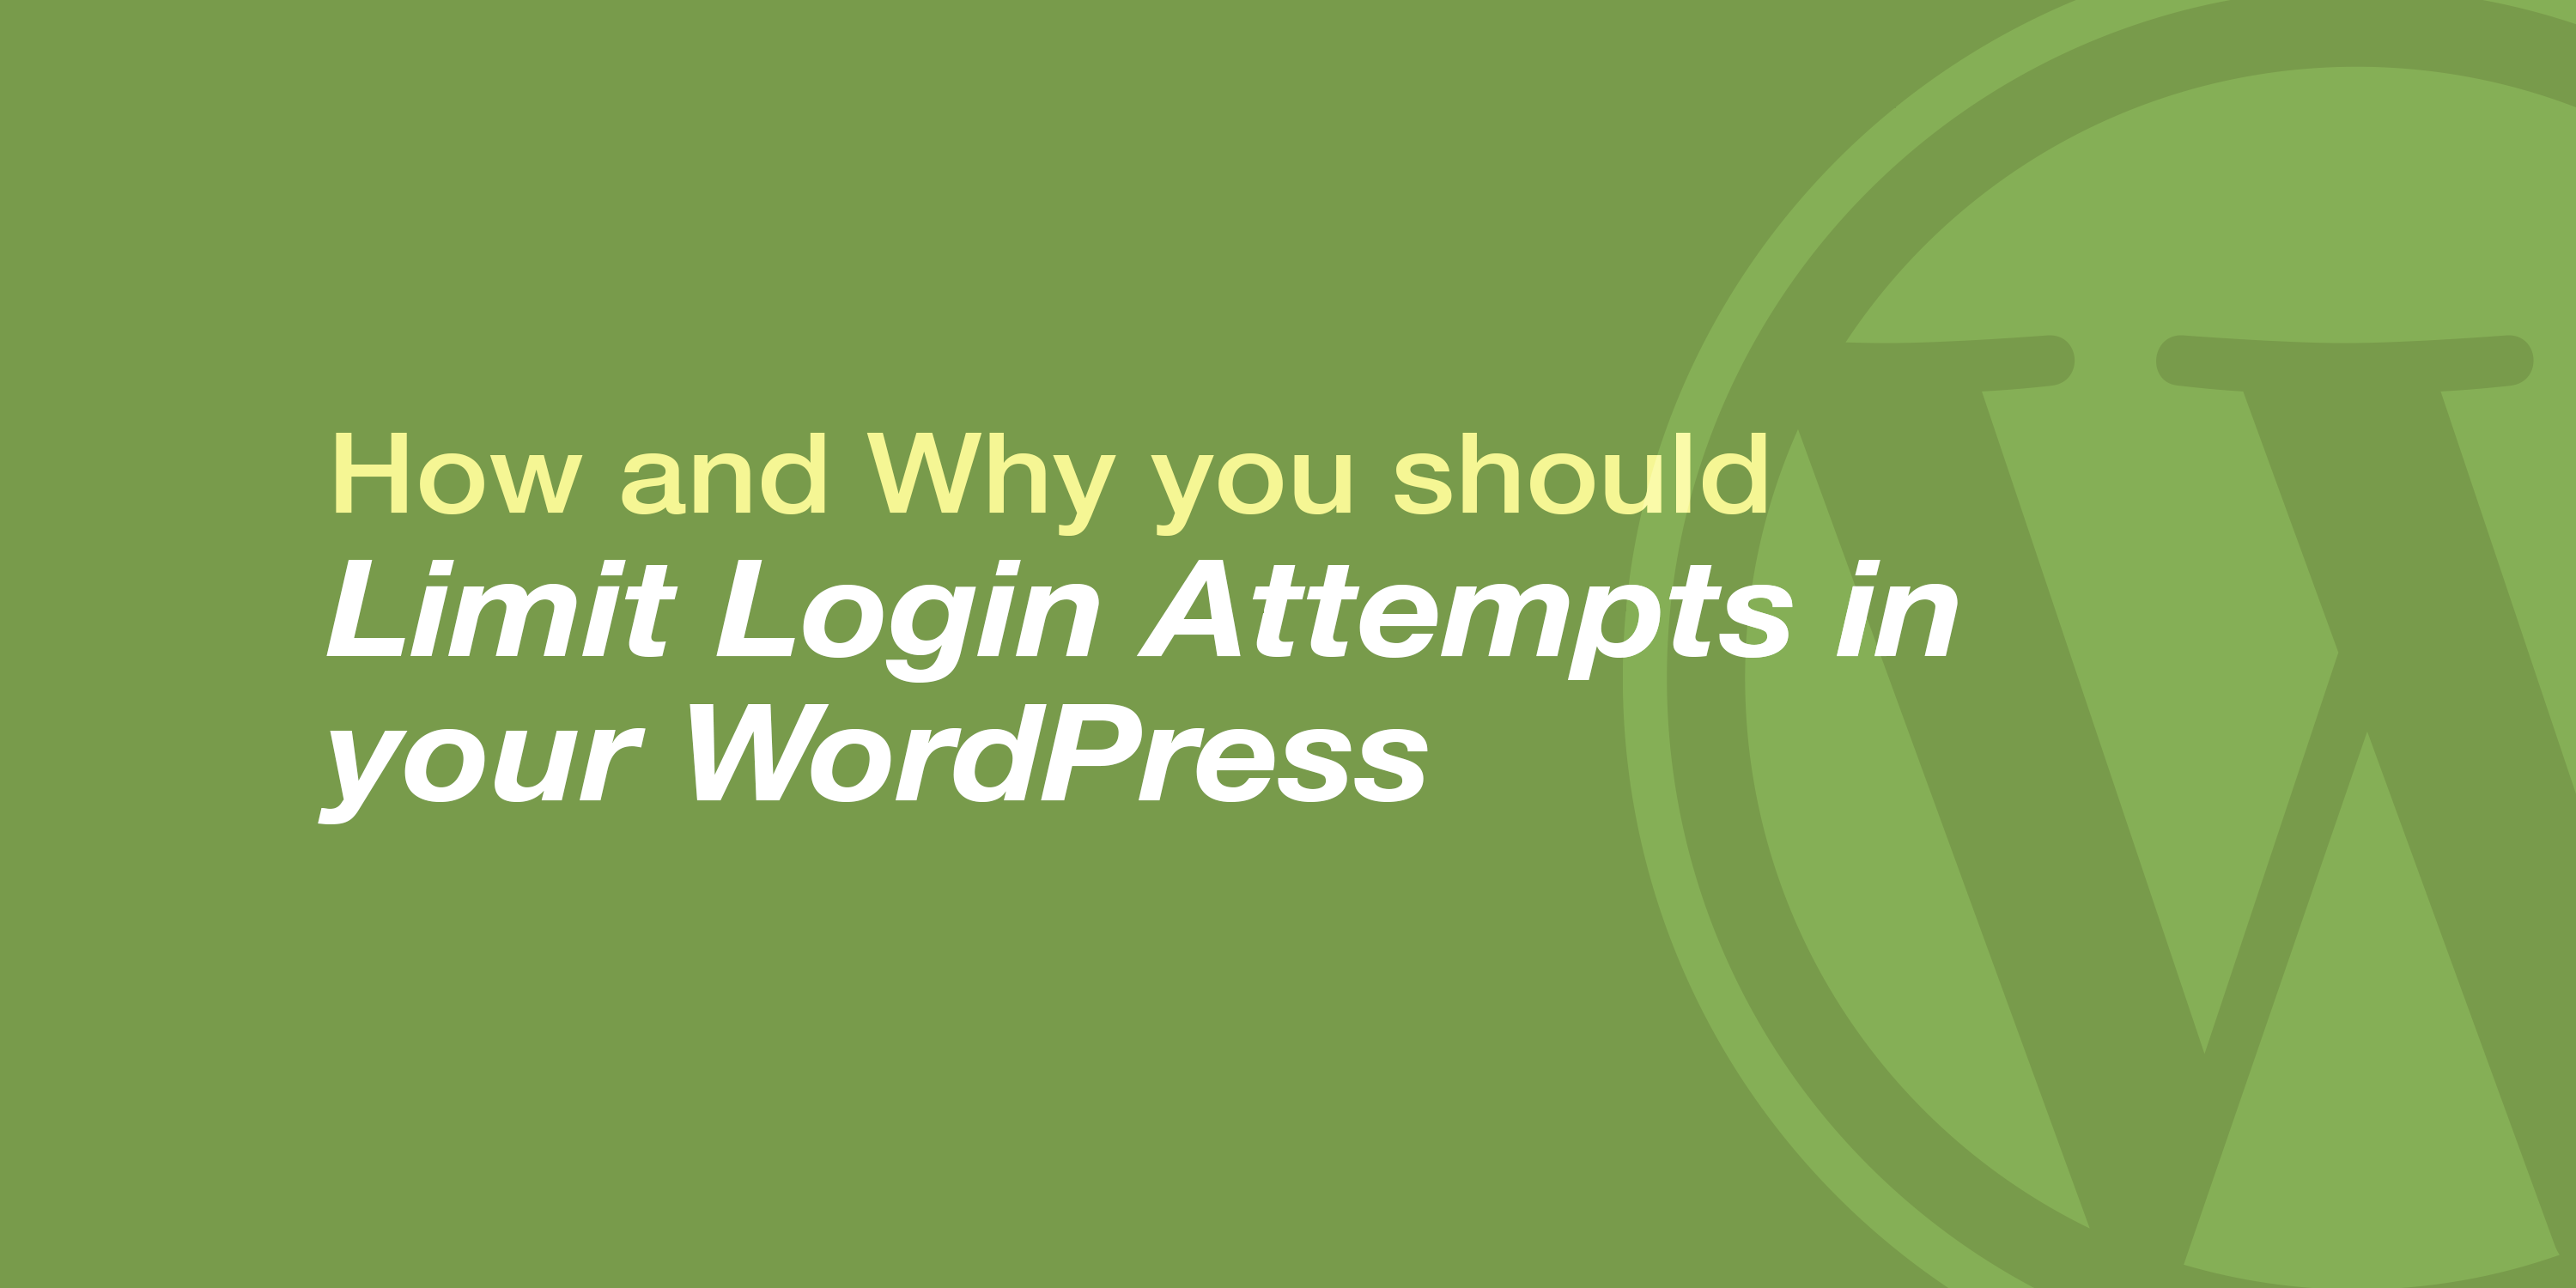 Limit Login Attempts in WordPress